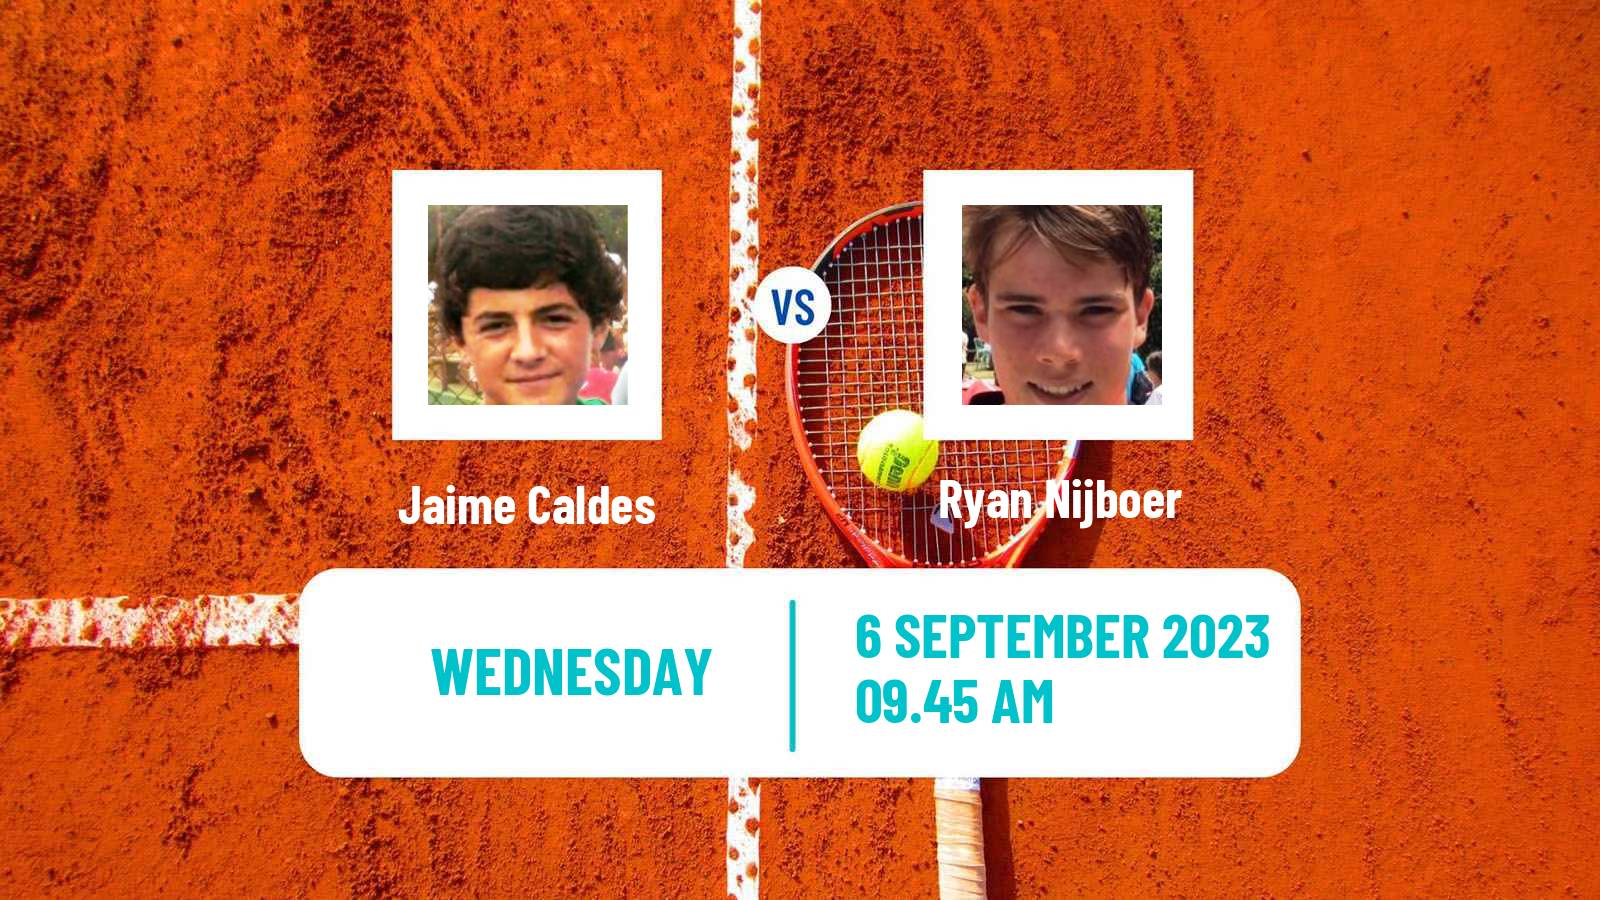 Tennis ITF M15 Madrid Men 2023 Jaime Caldes - Ryan Nijboer